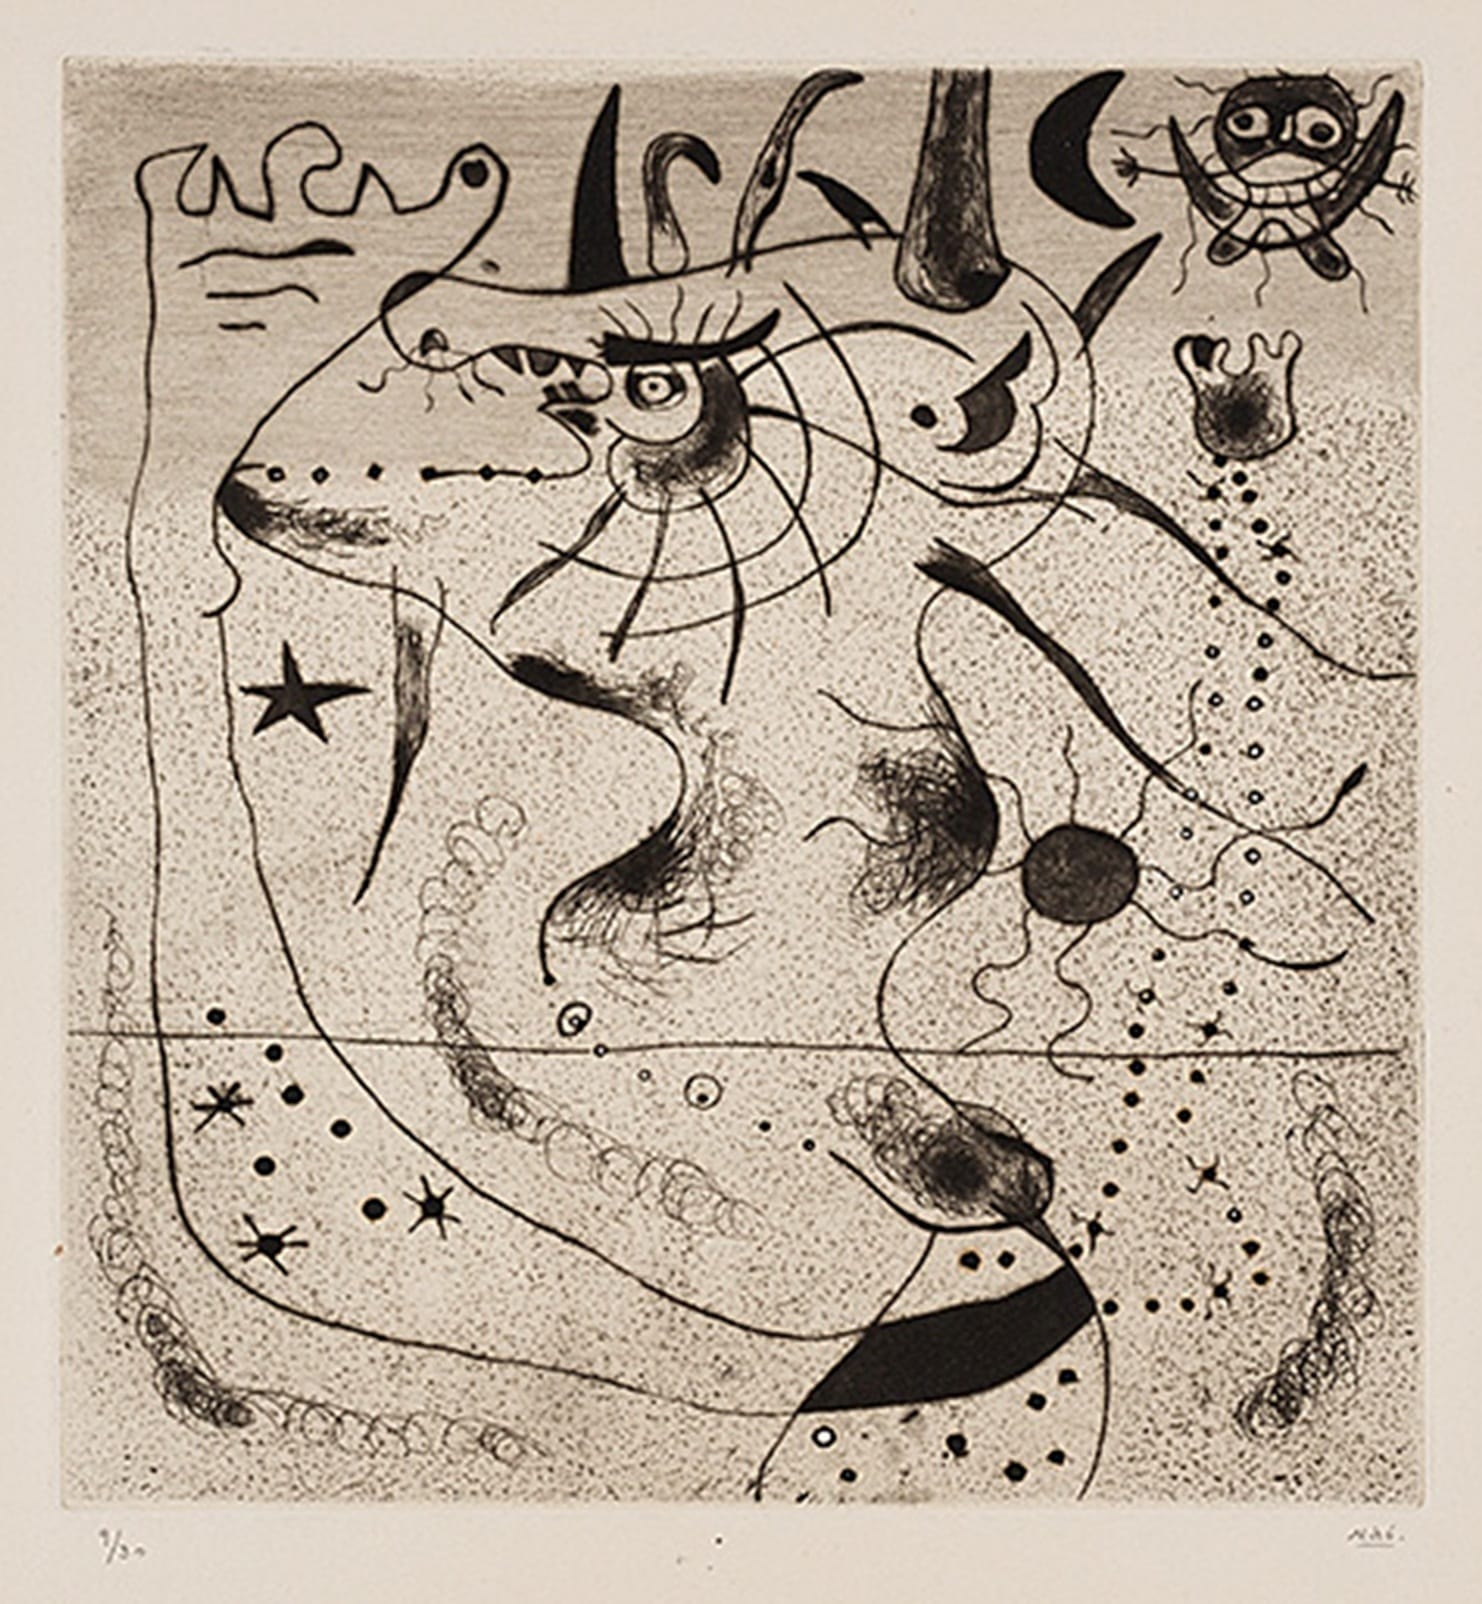 "צורות חיות", חואן מירו, מקס ארנסט, מוזיאון תל-אביב, אוצרת: אירית הדר. פתיחה: 13.11.14, נעילה: 1.2.15. מבחר הדפסים שיצר חואן מירו לספרים וכתבי-עת והאלבום של מקס ארנסט "ידיעת הטבע" (1926). בתמונות: חואן מירו, "הענק המתעורר", 1938; מקס ארנסט, "ידיעת הטבע", 1926